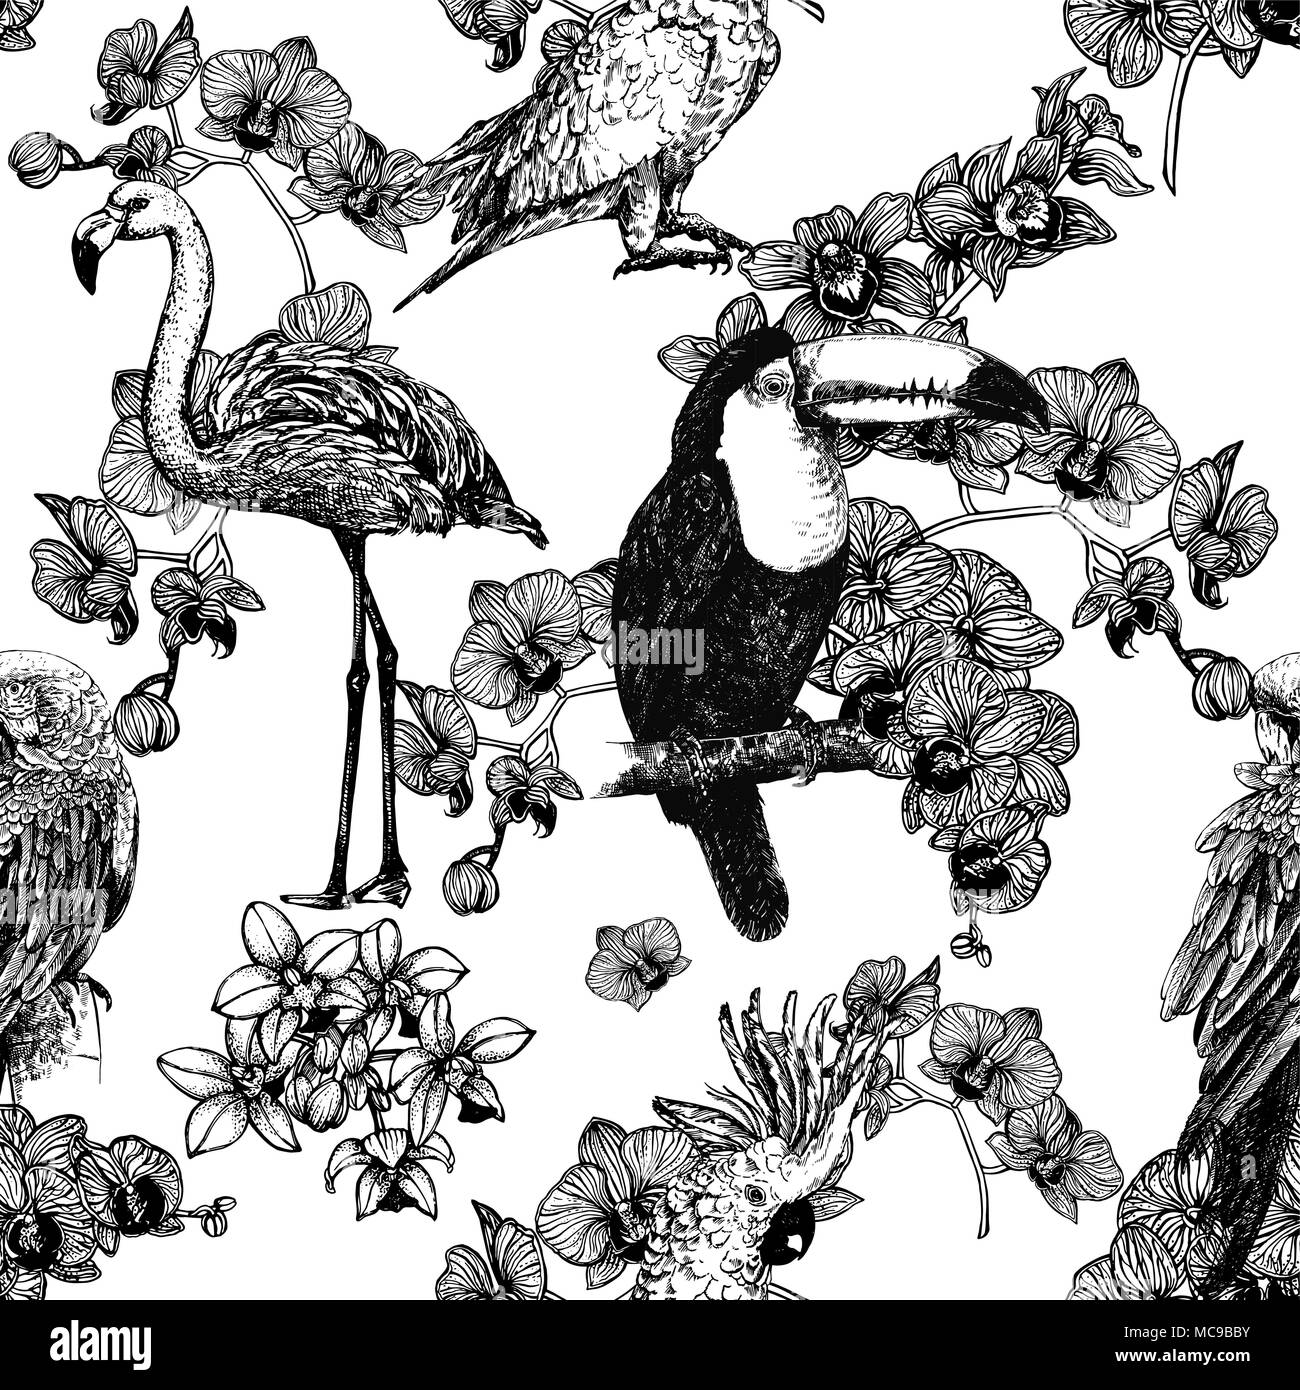 Nahtlose Muster von Hand gezeichnete Skizze Stil, exotische Blumen und Vögel auf weißem Hintergrund. Vector Illustration. Stock Vektor